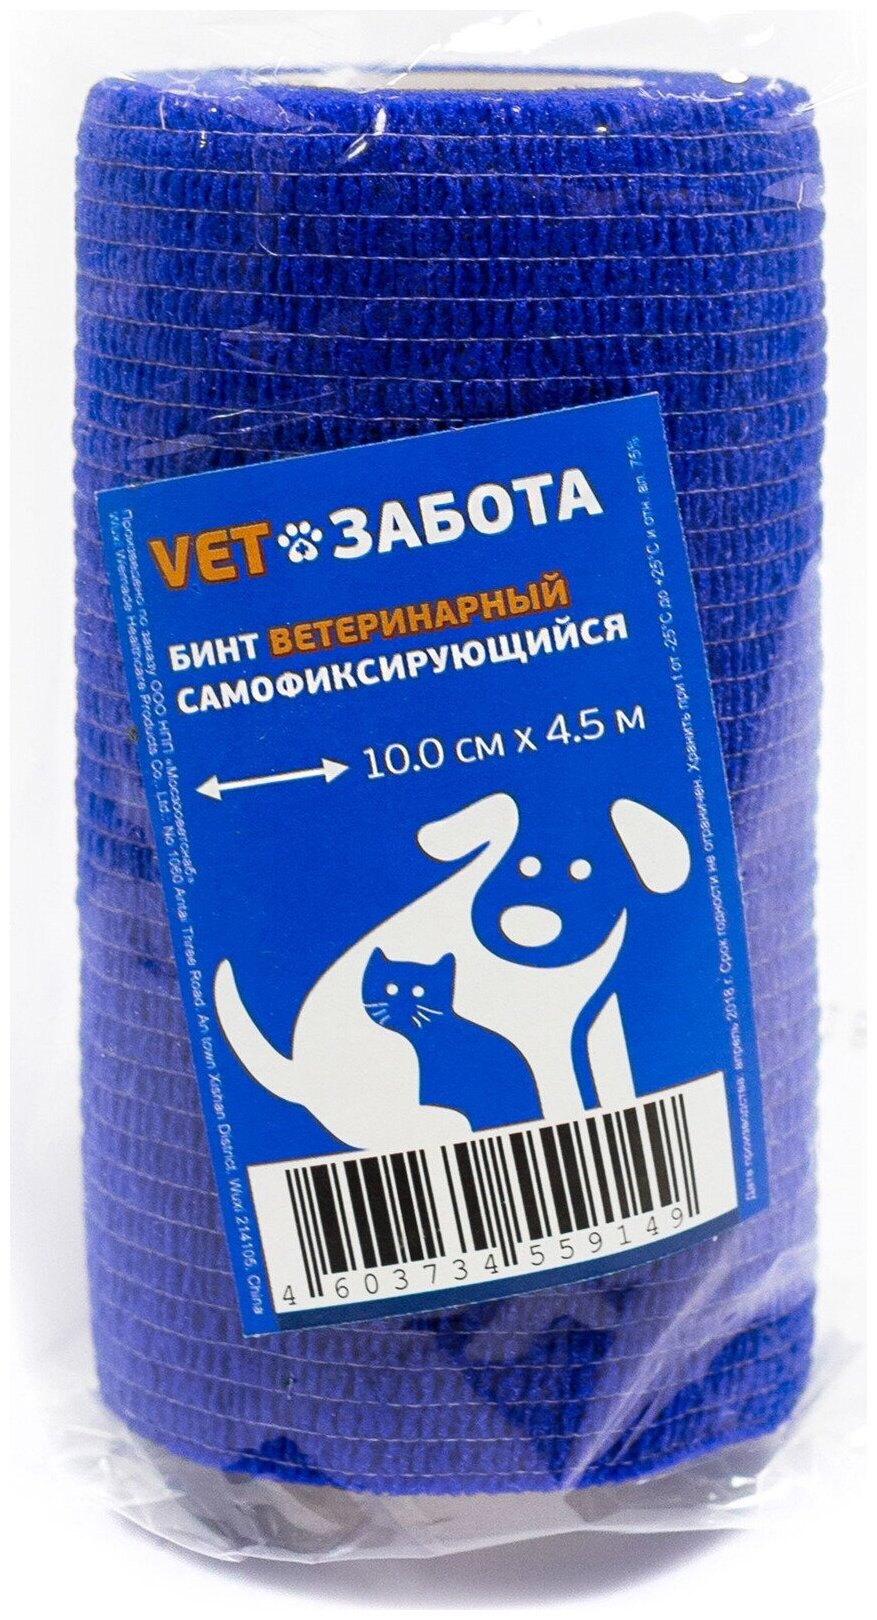 Бинт ветеринарный самофиксирующийся vetзабота 10 см*4,5 м синий